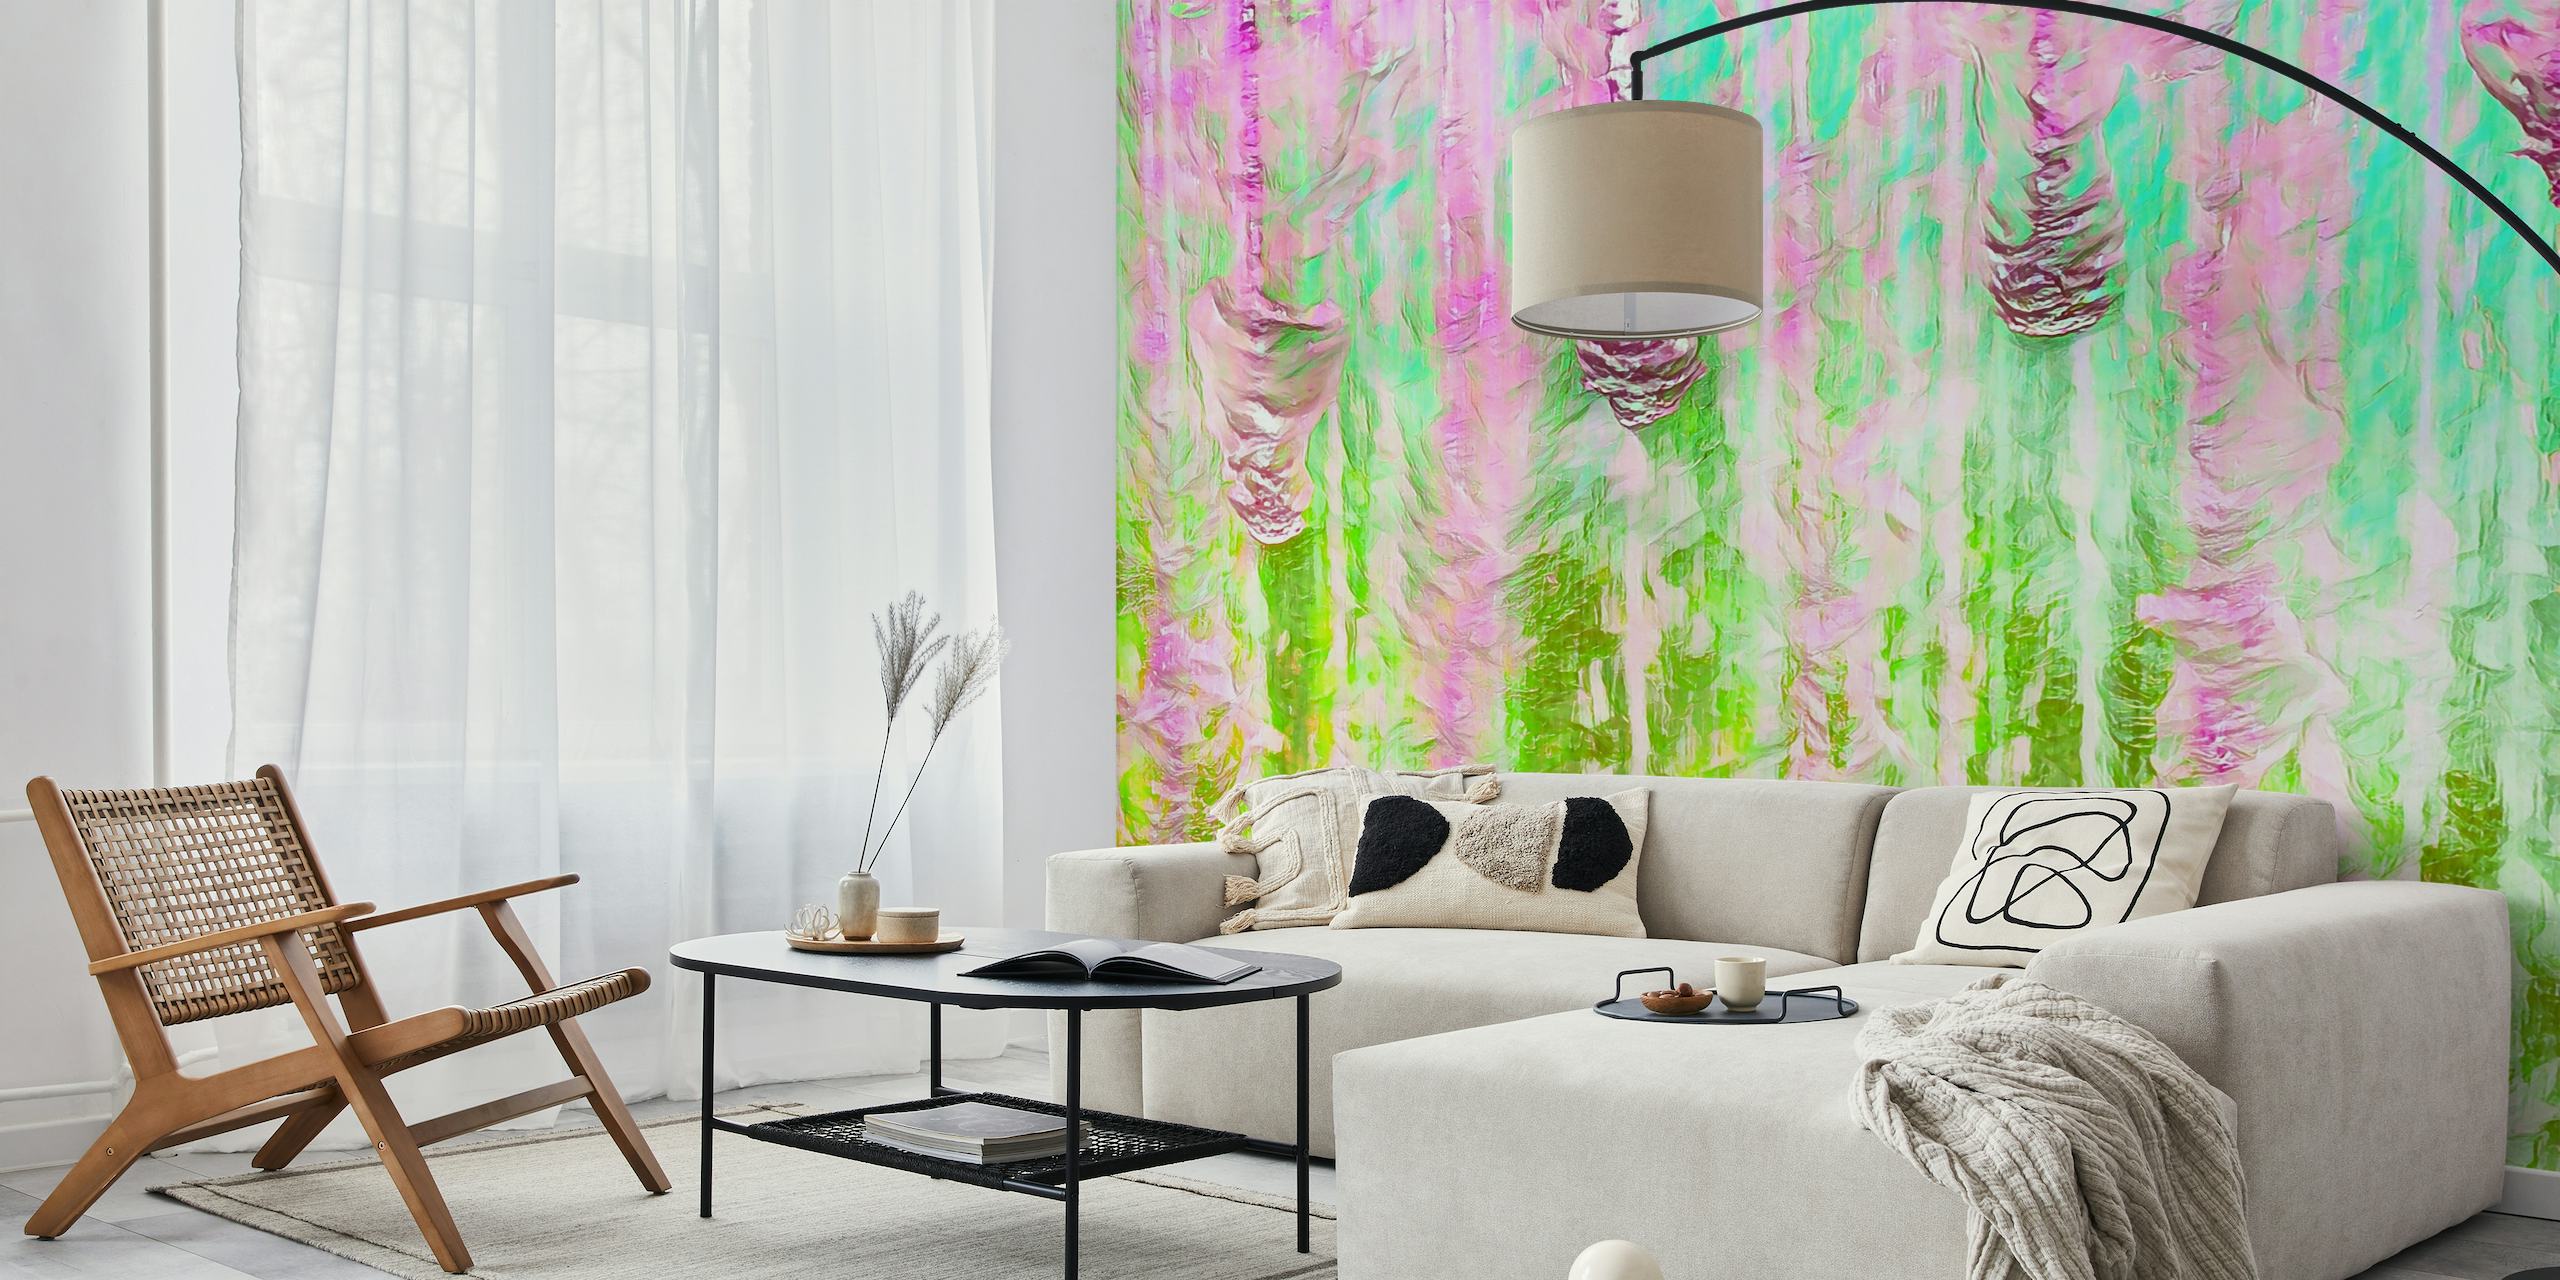 Colorato murale astratto Happy Liquid Paint Flow con vivaci rosa e verdi, che creano un fluido effetto acquerello.